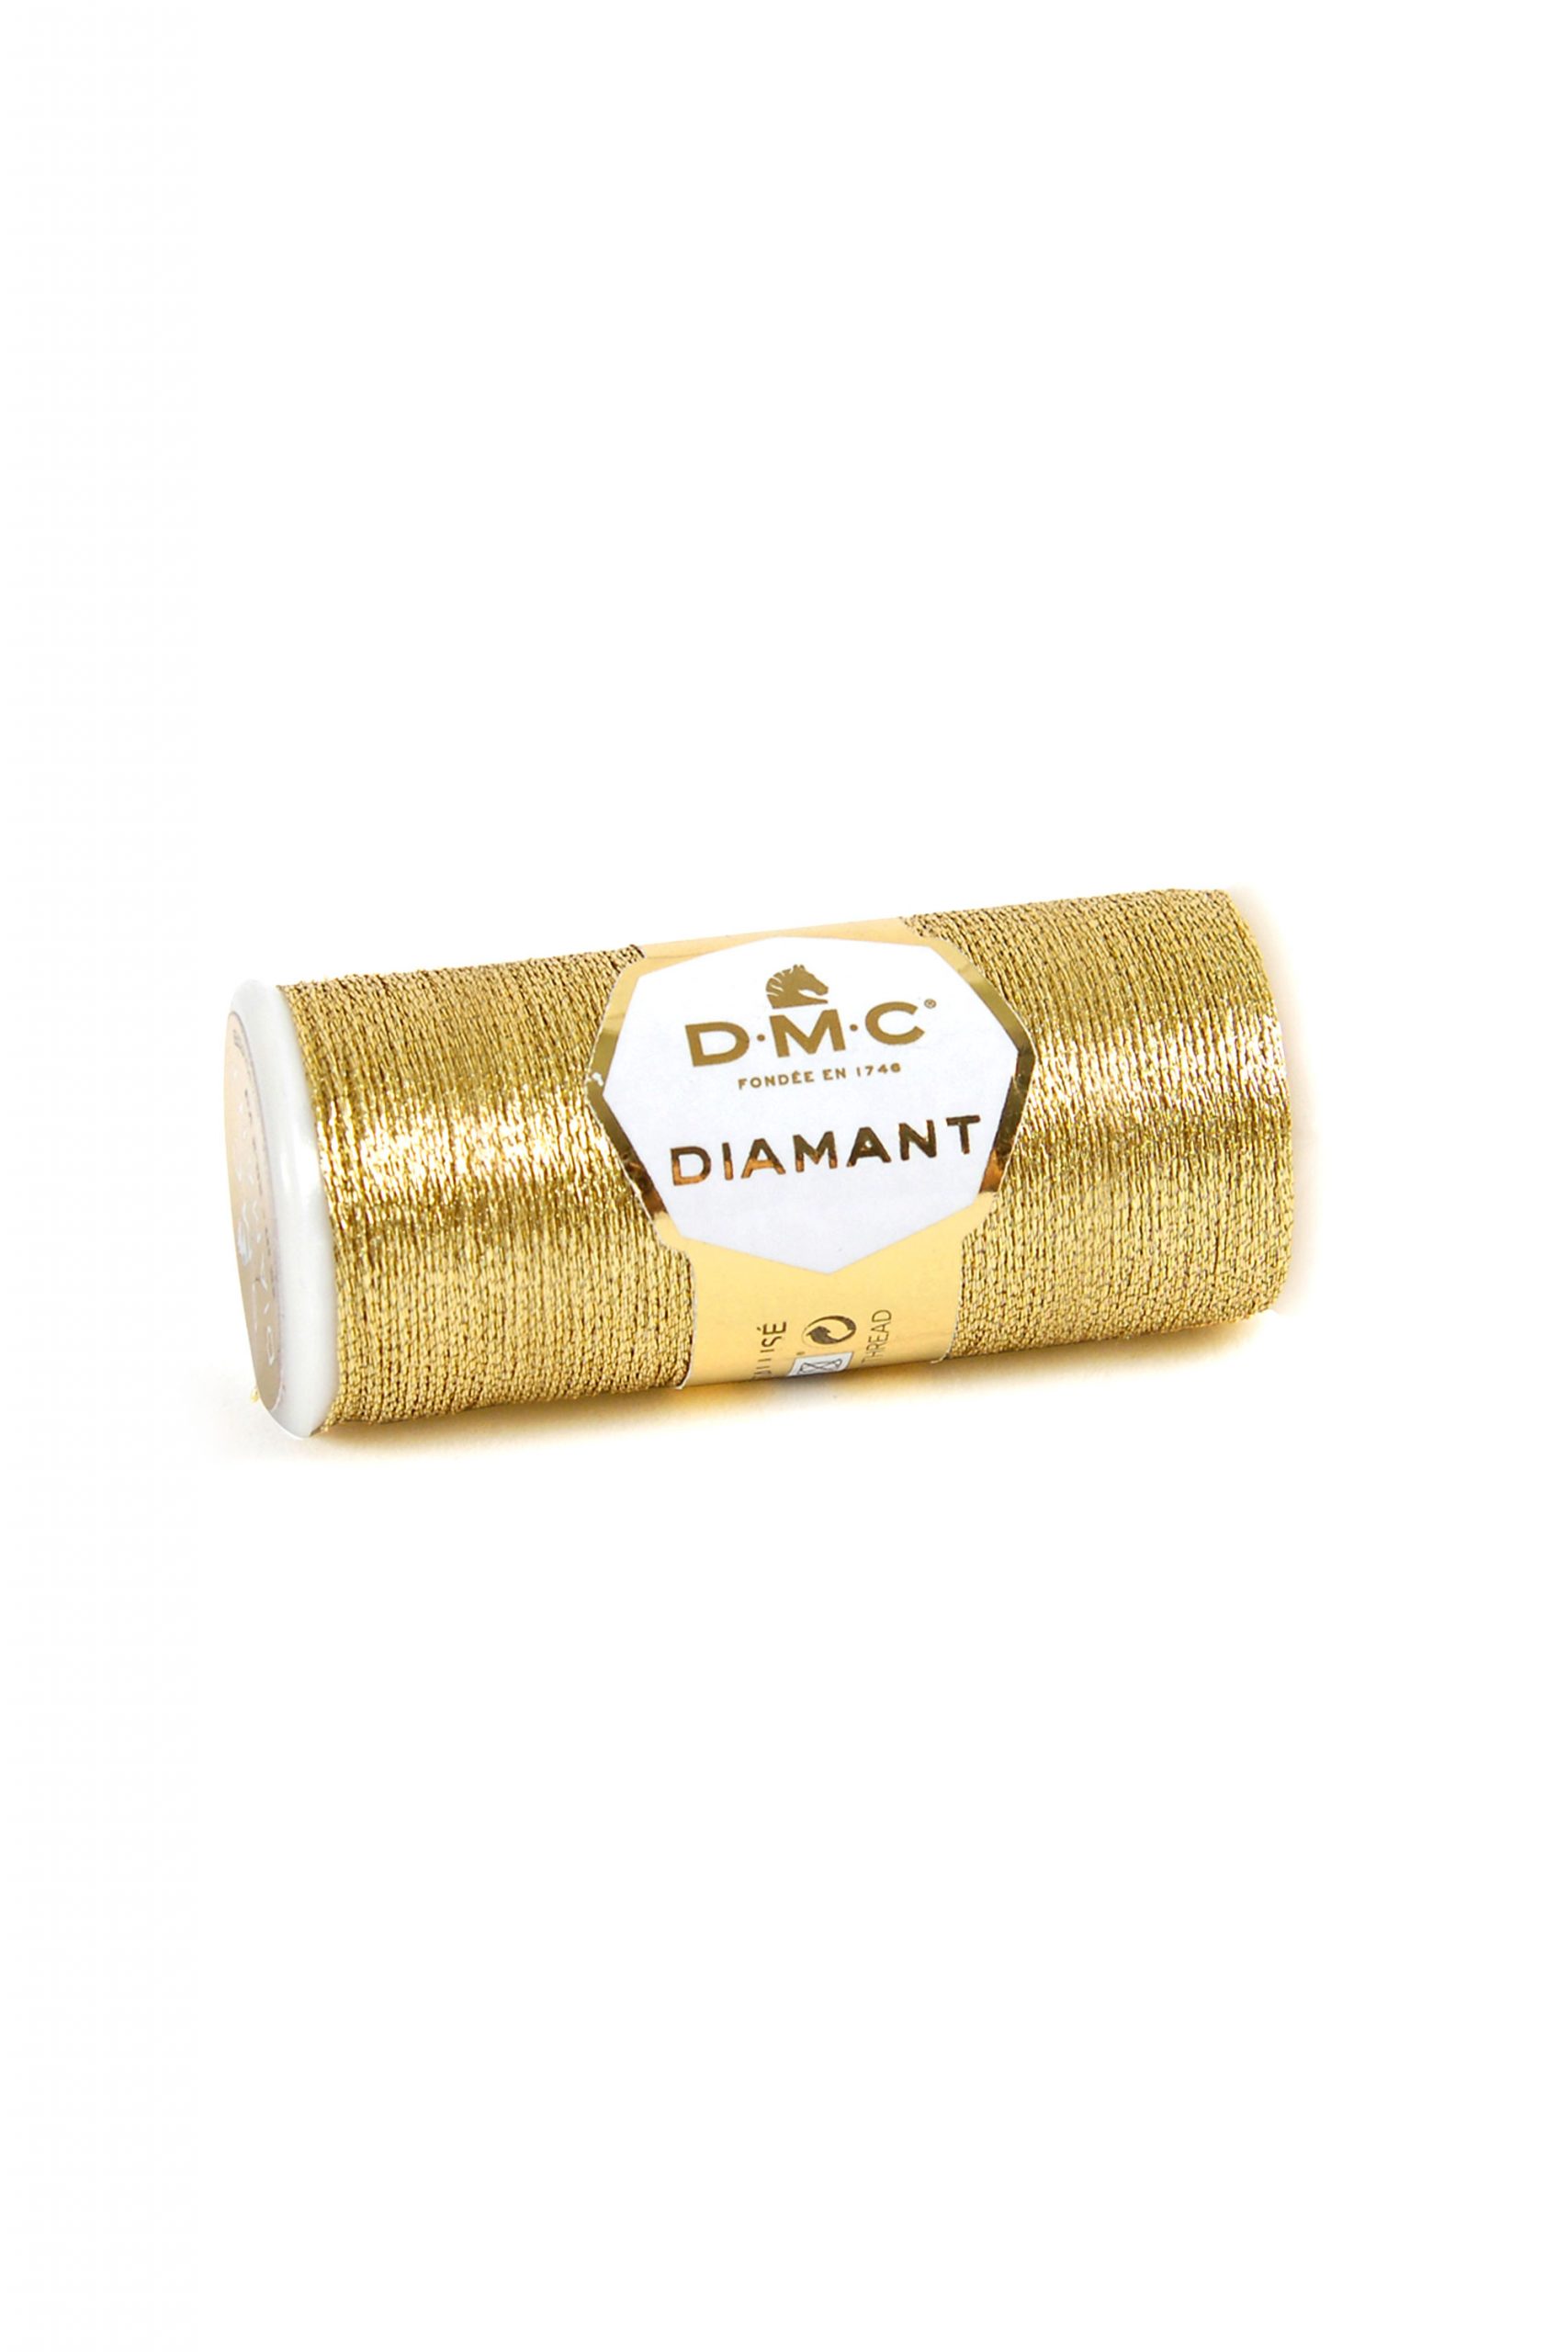 DMC Diamant - D3821